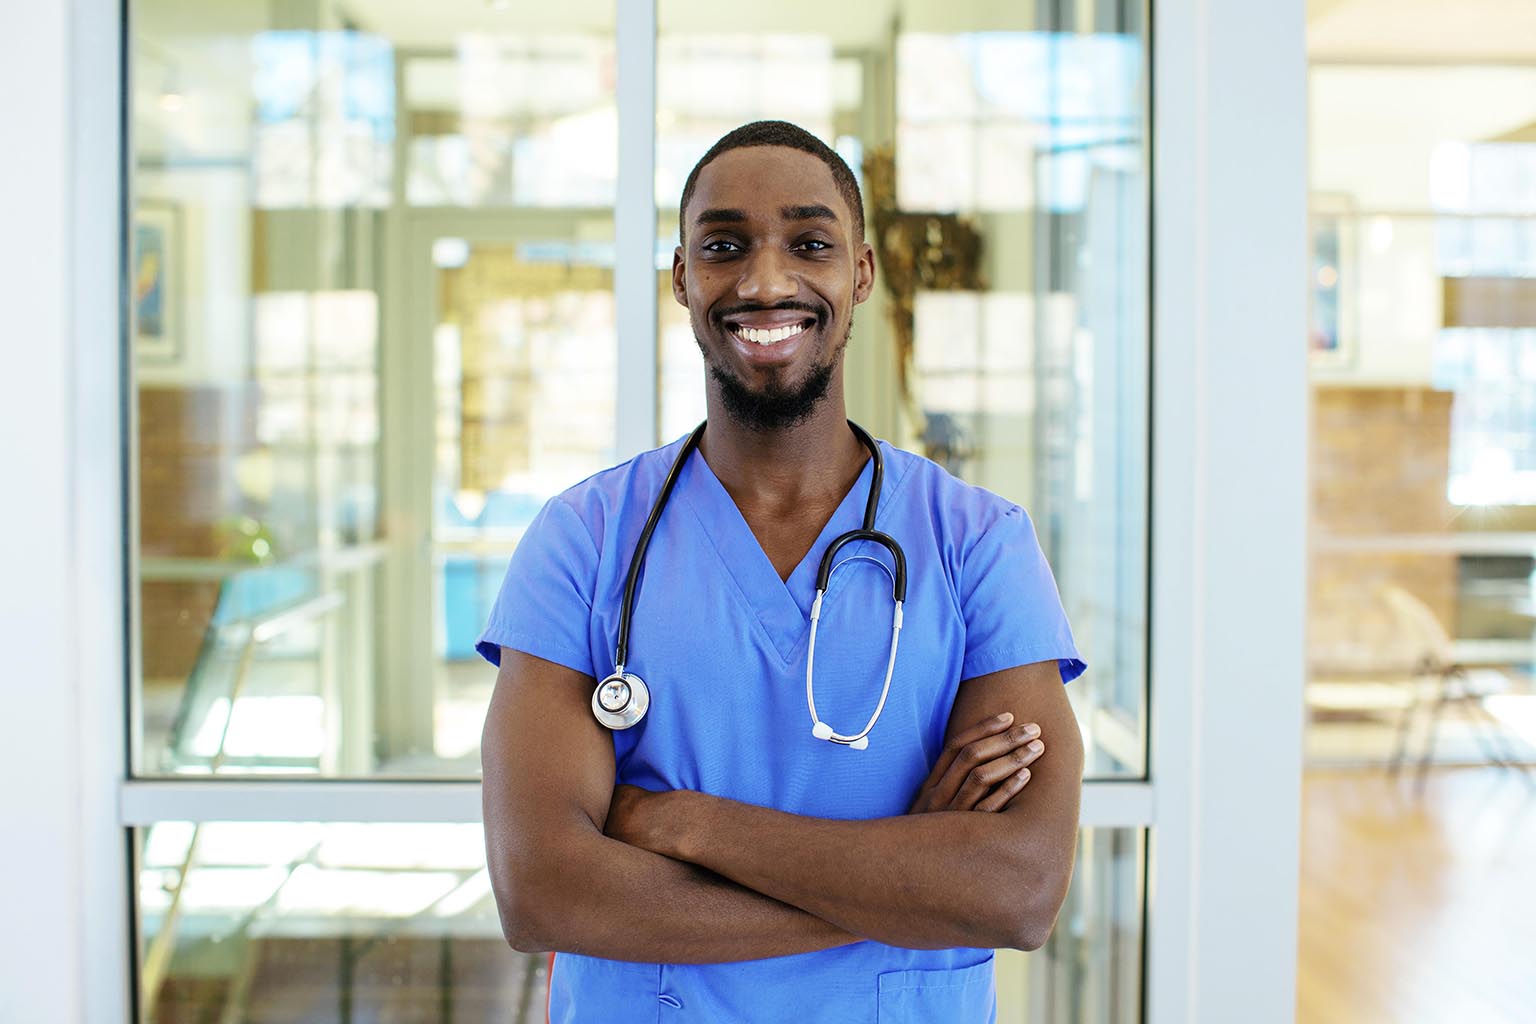 recruiting millennial physicians